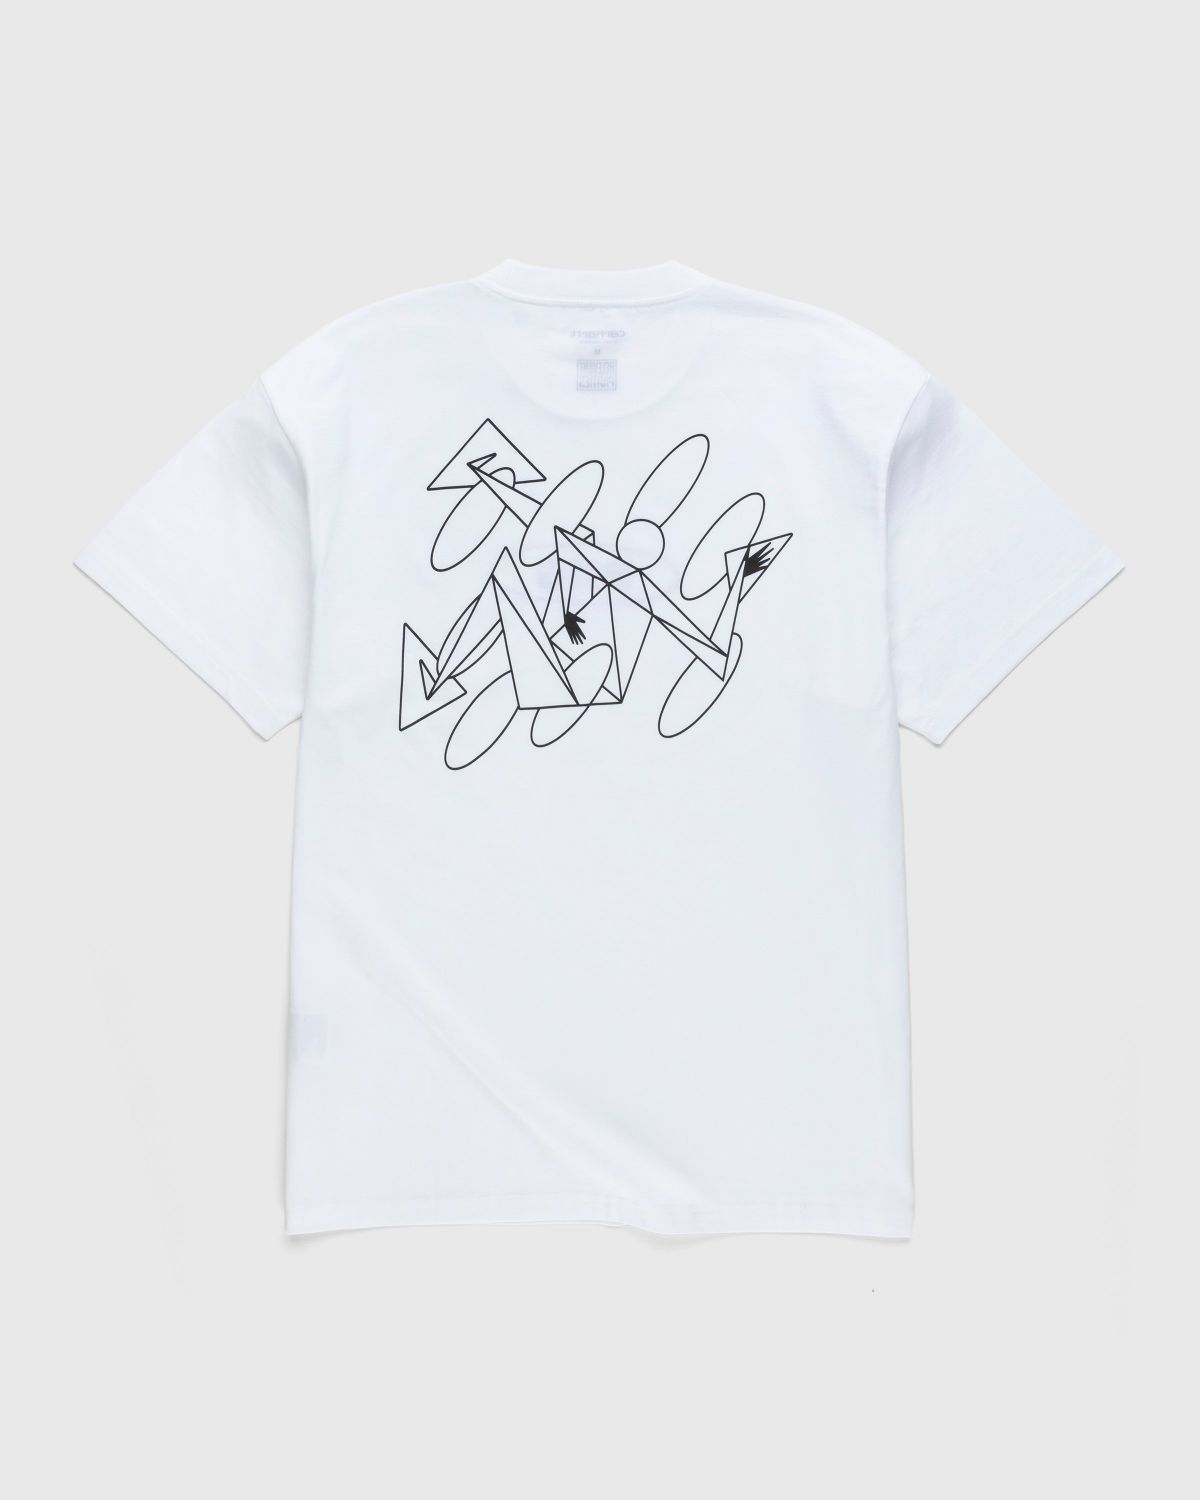 Carhartt WIP – Rush Hour T-Shirt White/Black - Tops - White - Image 2